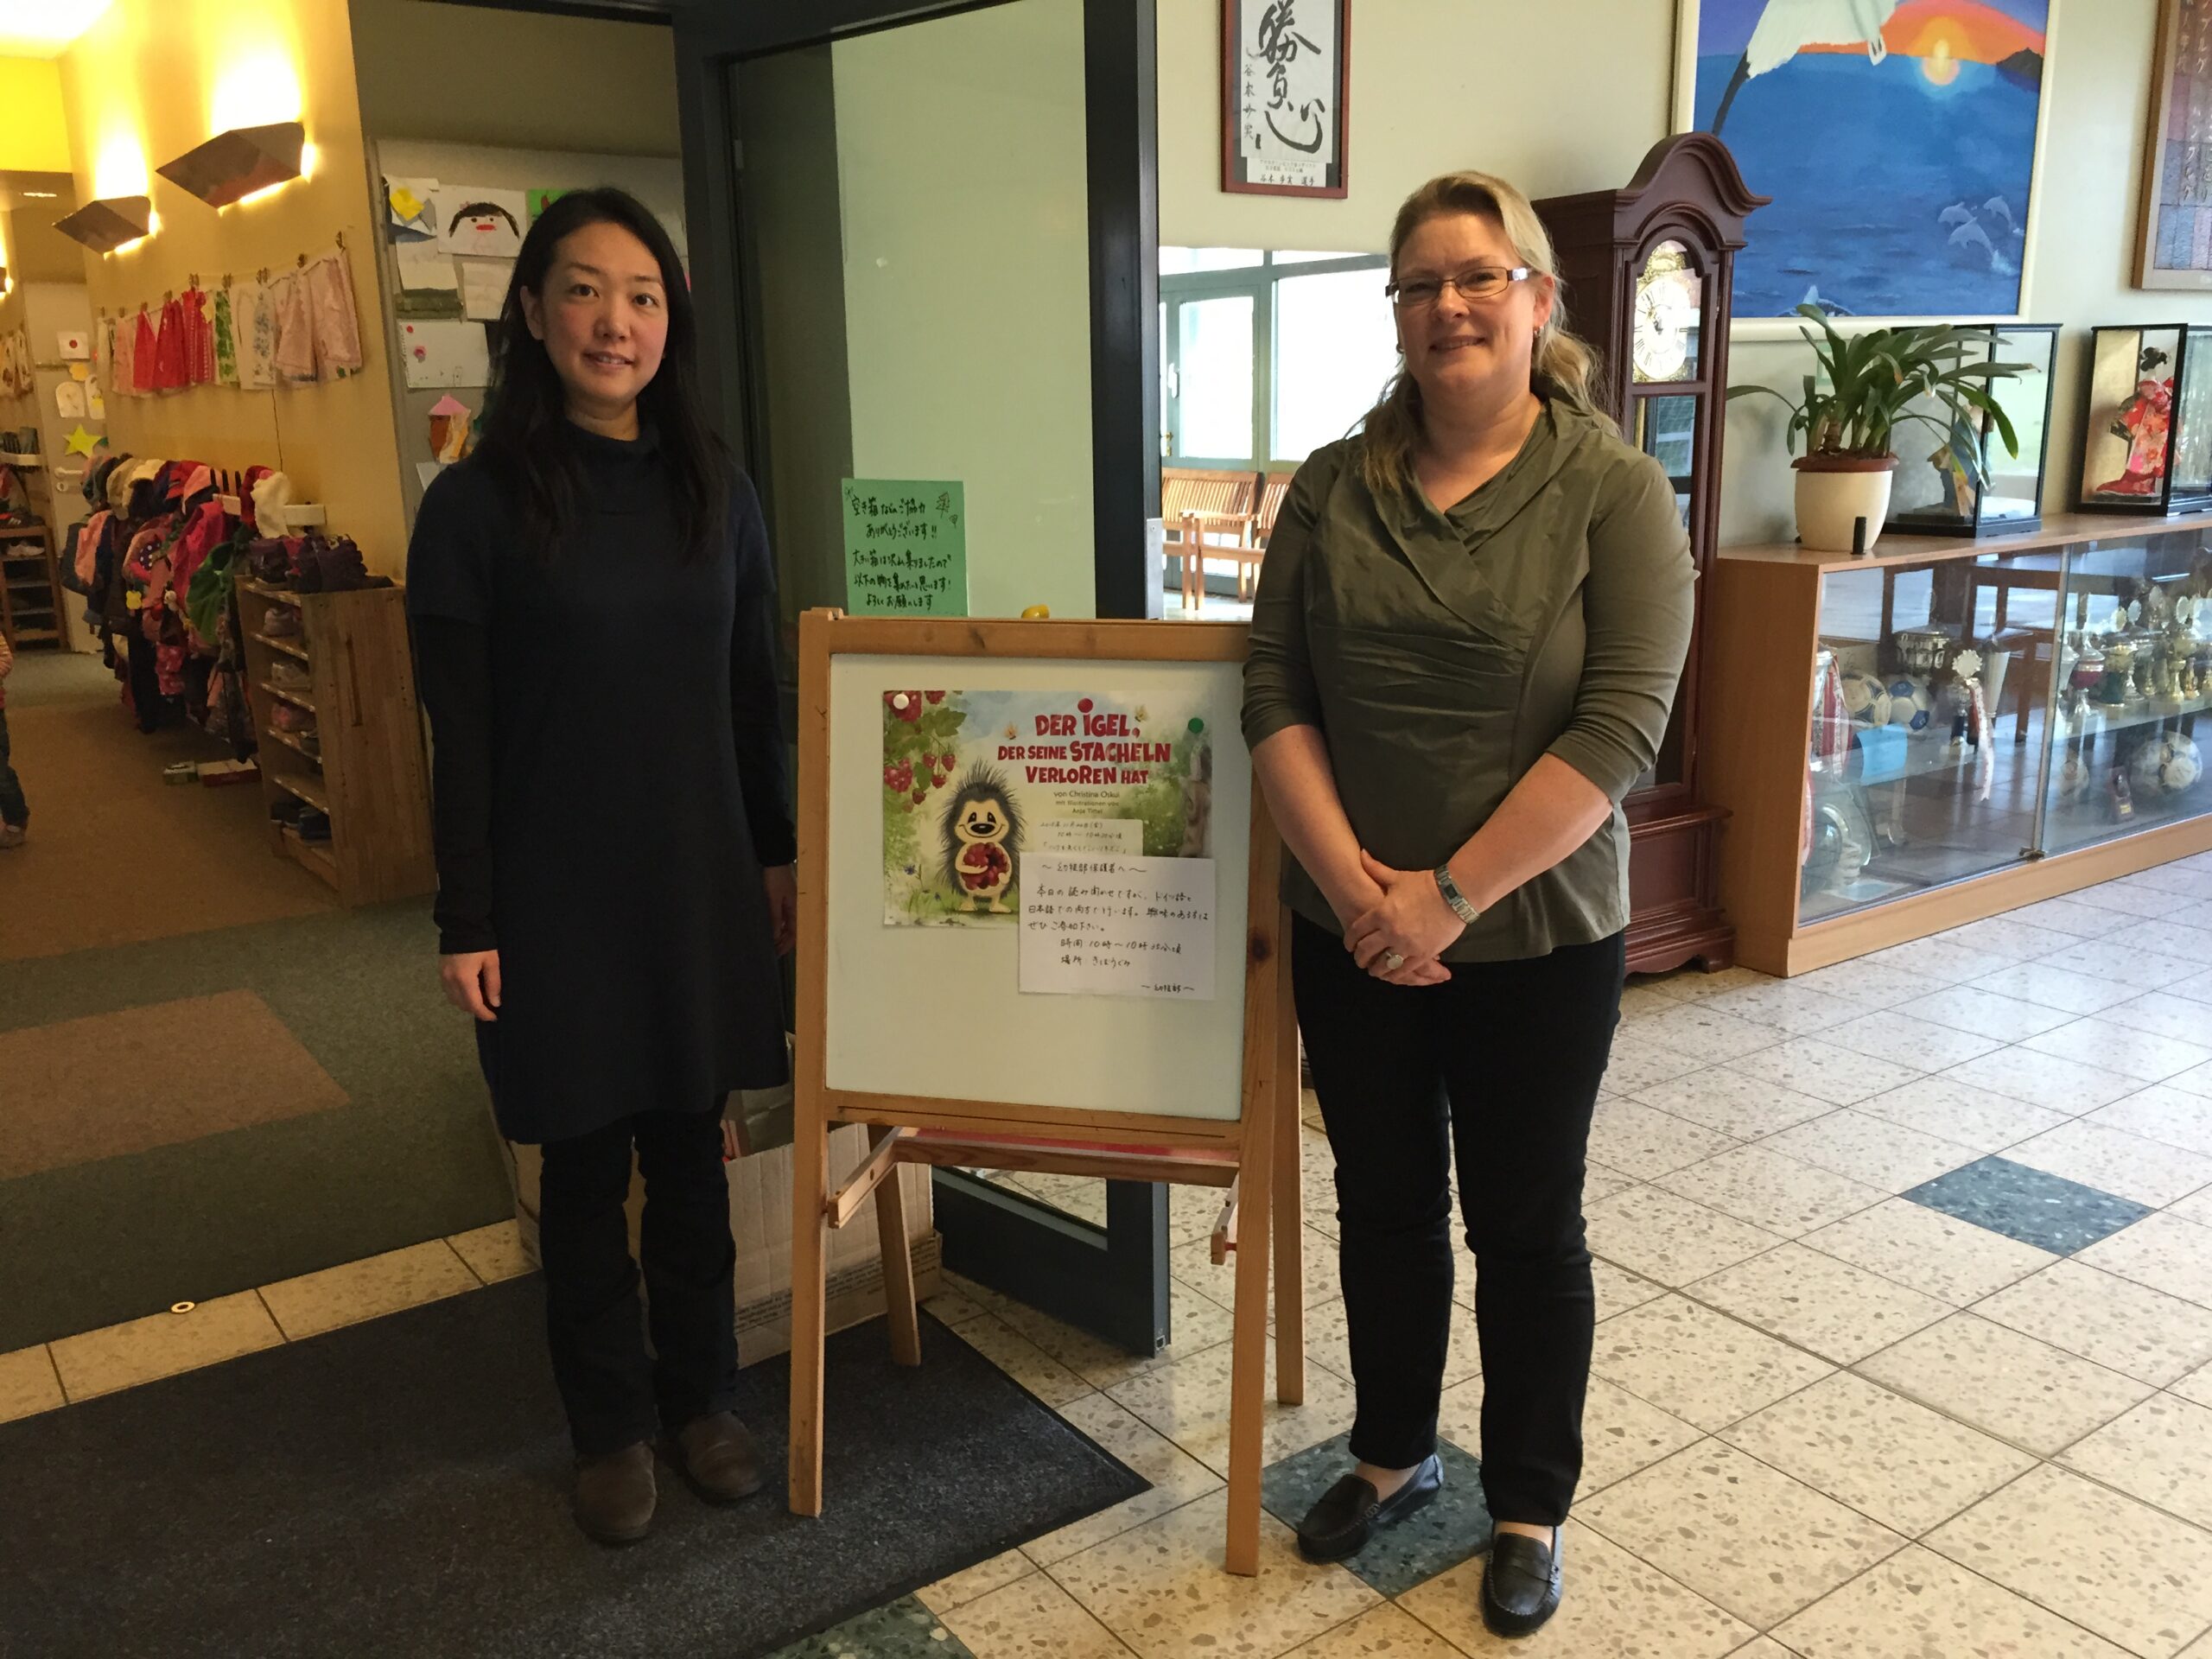 Eingangshalle japanischer Kindergarten Halstenbek. Zwei Frauen stehen neben einem Hinweisschild. Lesung Fabel "Der Igel, der seine Stacheln verloren hat!".